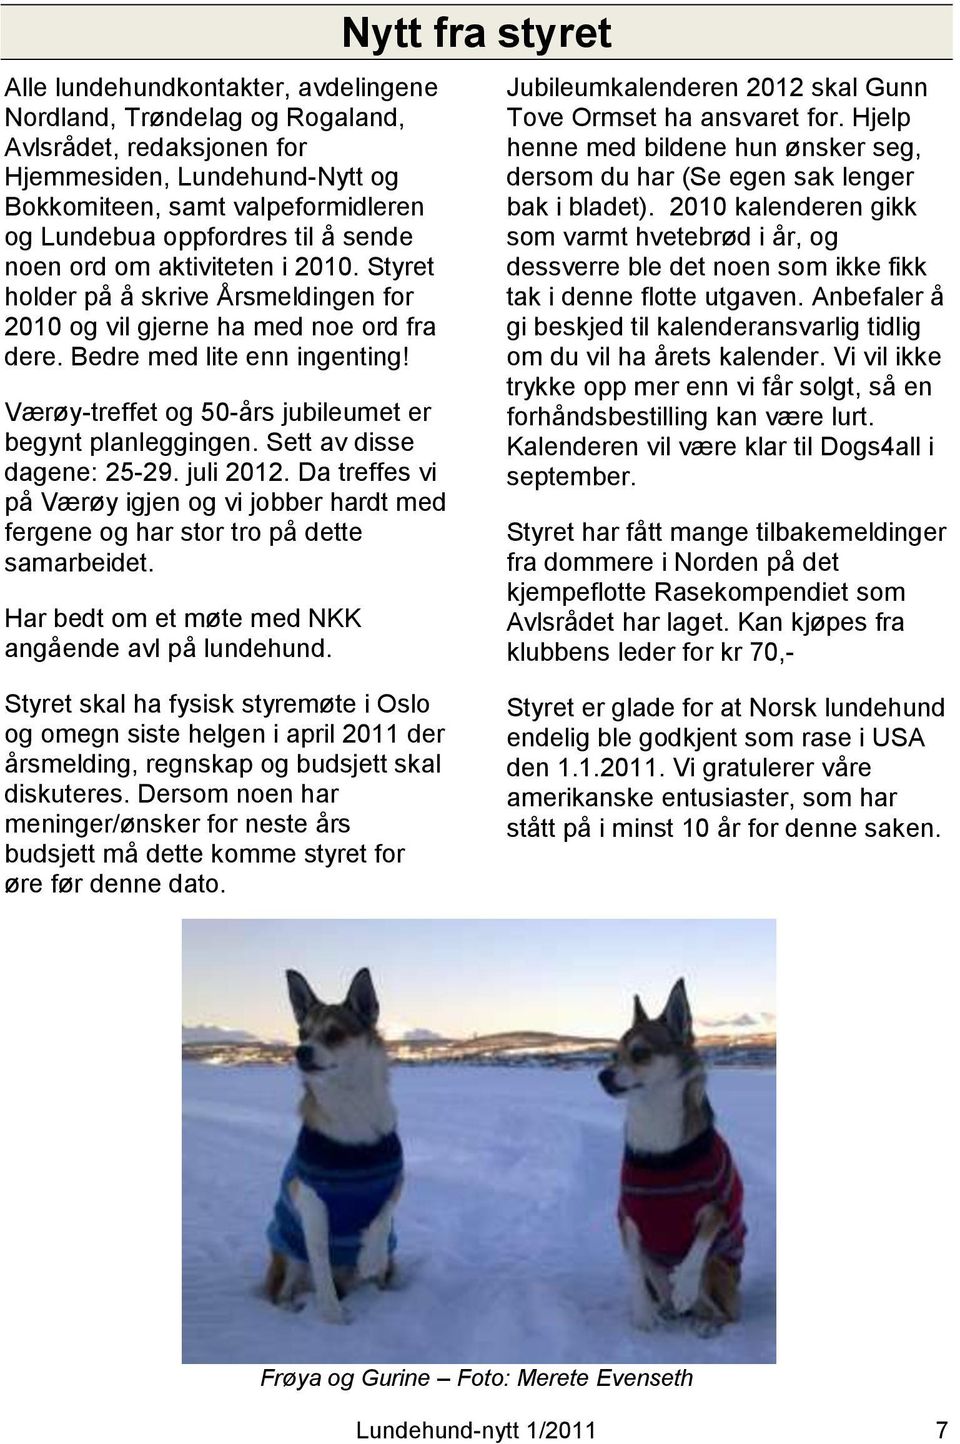 Værøy-treffet og 50-års jubileumet er begynt planleggingen. Sett av disse dagene: 25-29. juli 2012. Da treffes vi på Værøy igjen og vi jobber hardt med fergene og har stor tro på dette samarbeidet.